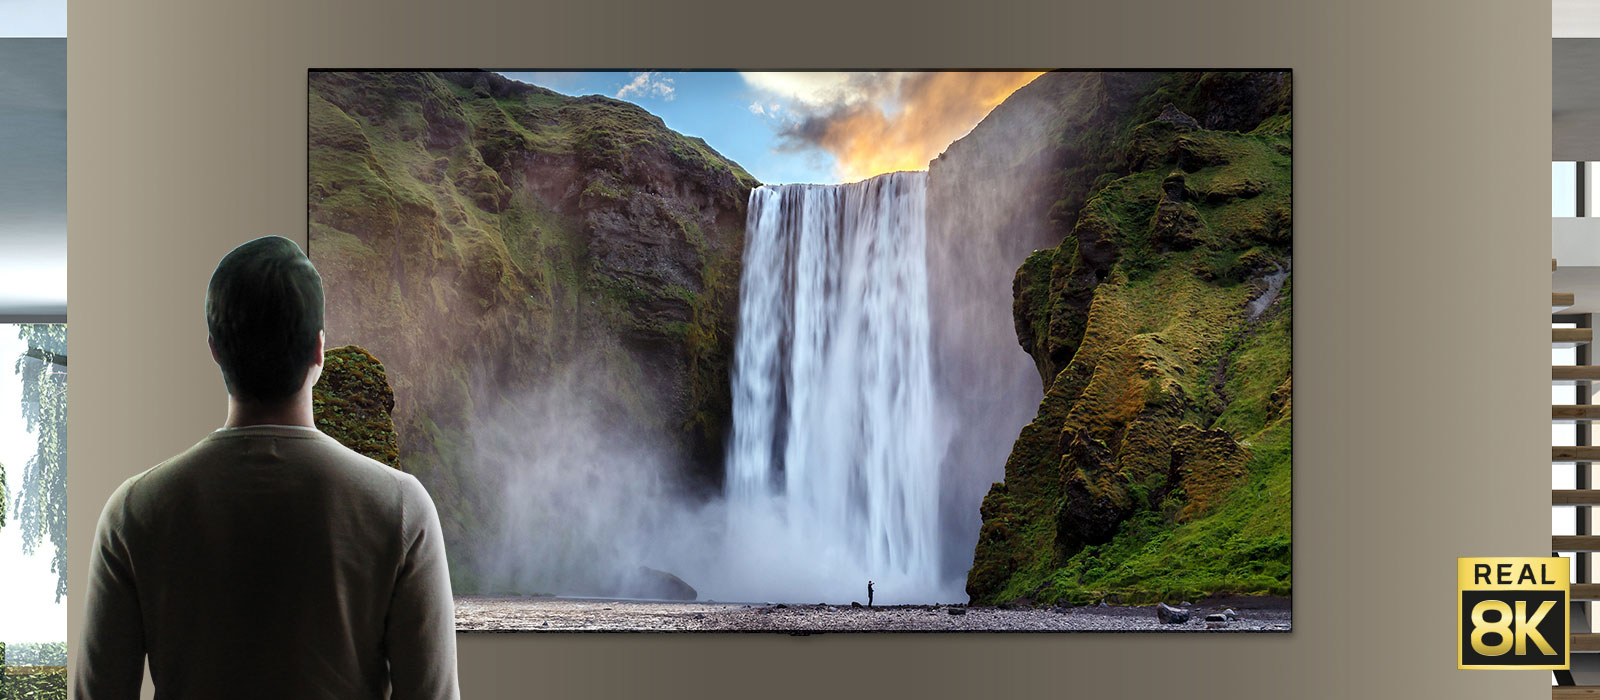 Человек, стоящий перед великолепным водопадом, обрушивающимся с горы. Камера отъезжает, и зрителю становится видно, что это изображение на телевизоре, закрепленном на стене.